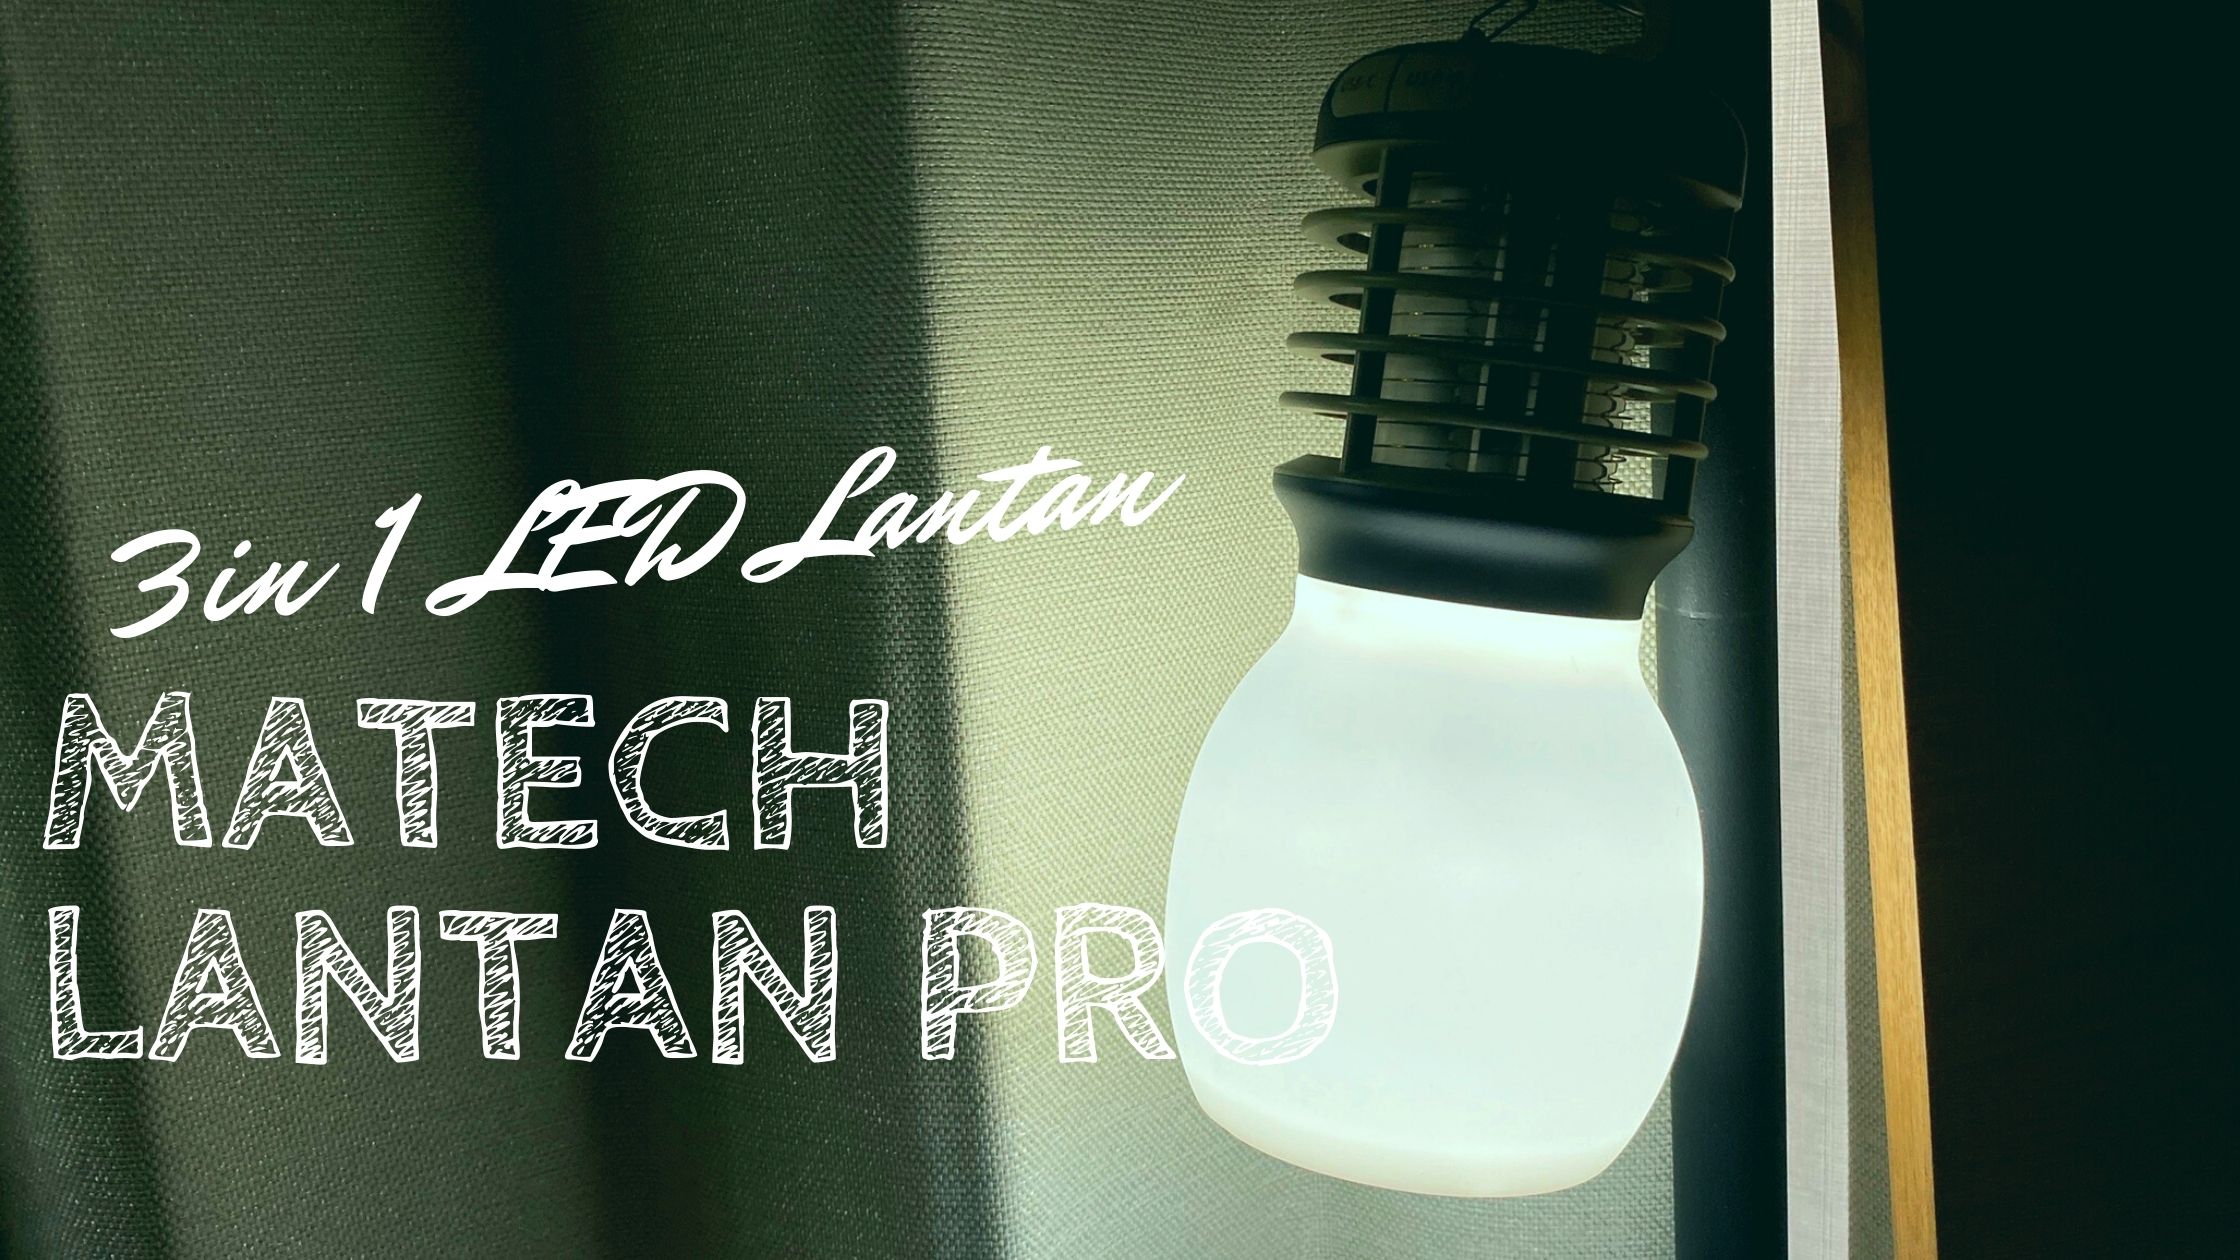 【キャンプや防災にも】MATECH LanternPro LEDランタンは殺虫灯&モバイルバッテリー付き